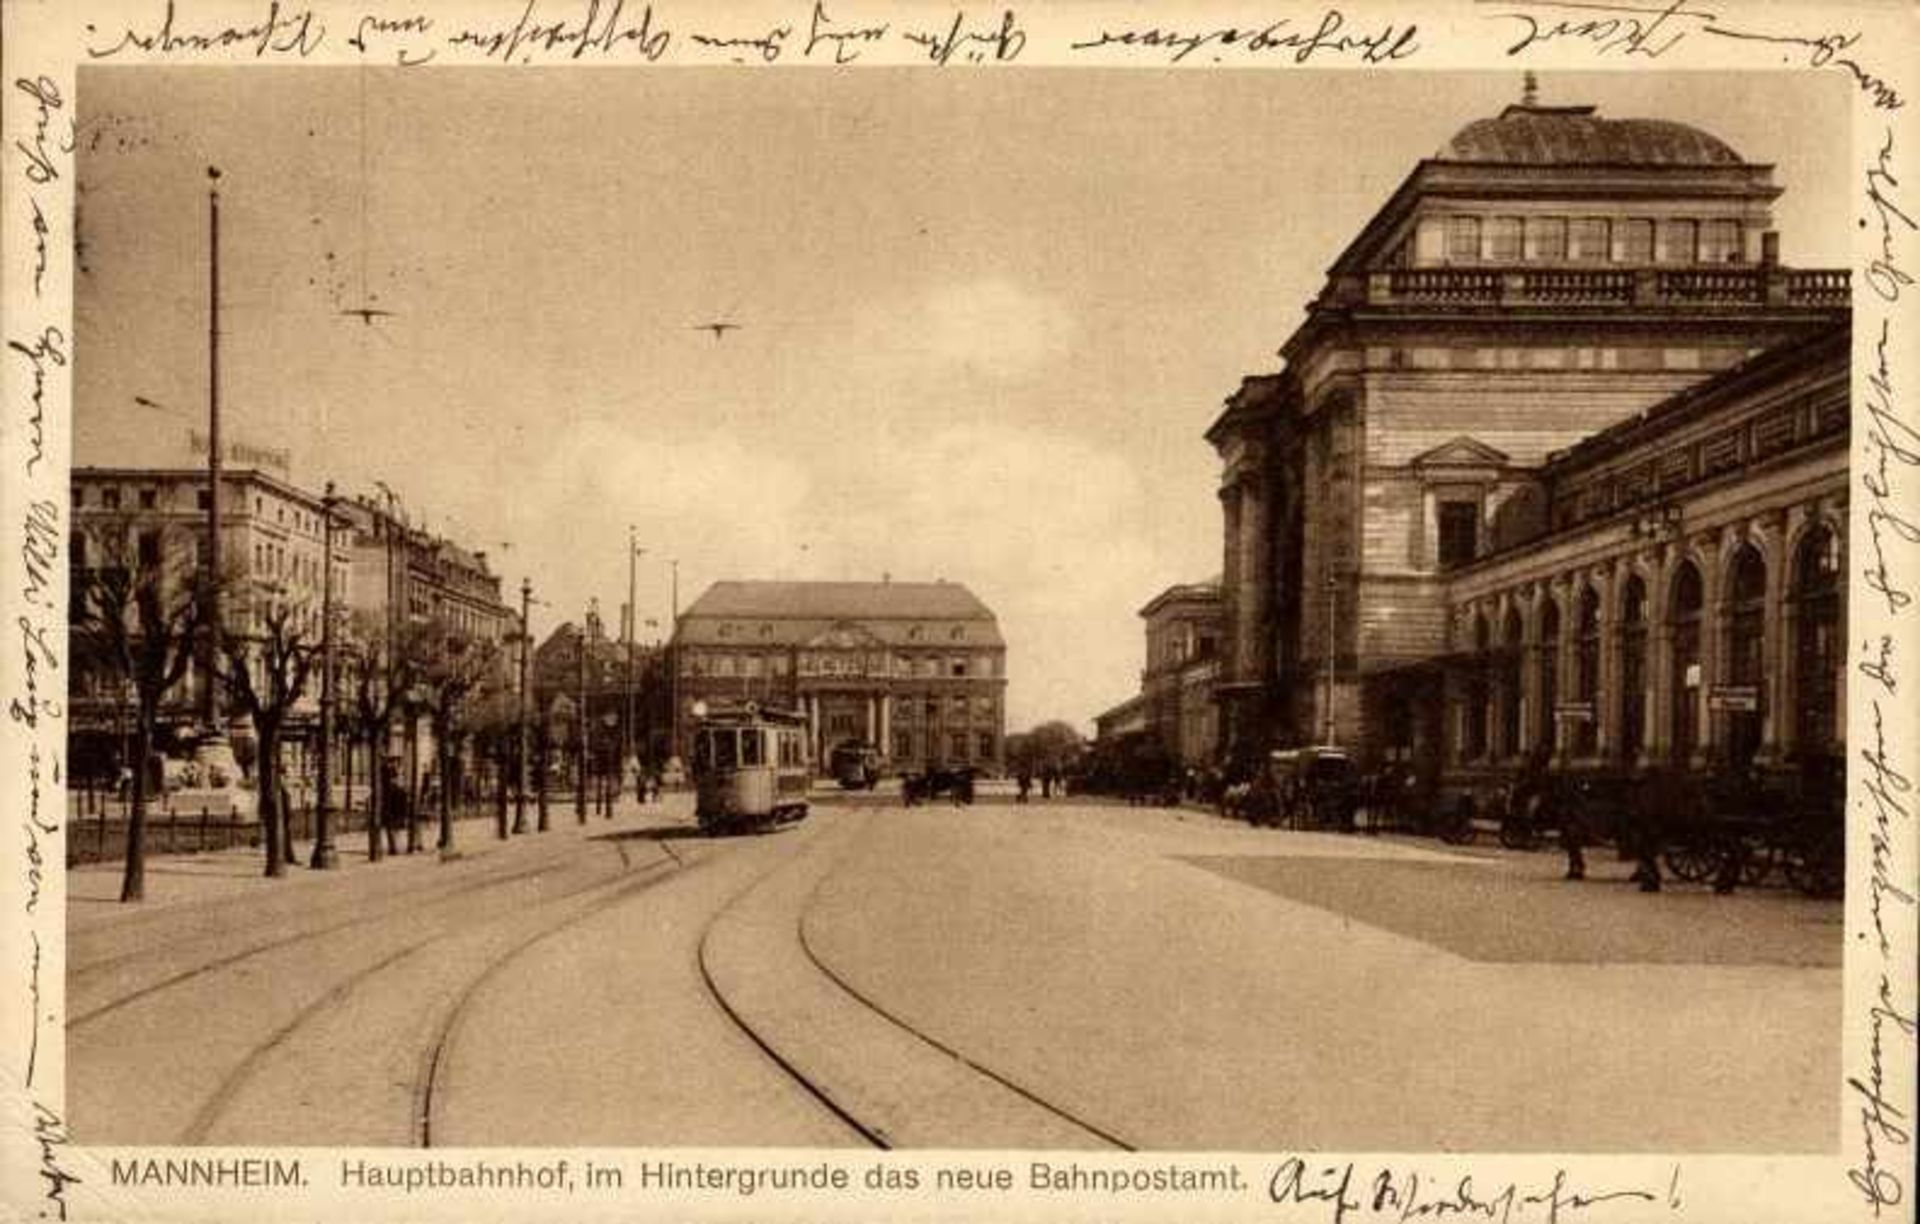 1 Postkarte, kleines Format, s/w, Mannheim - Hauptbahnhof, im Hintergrunde das neue Bahnpostamt, mit